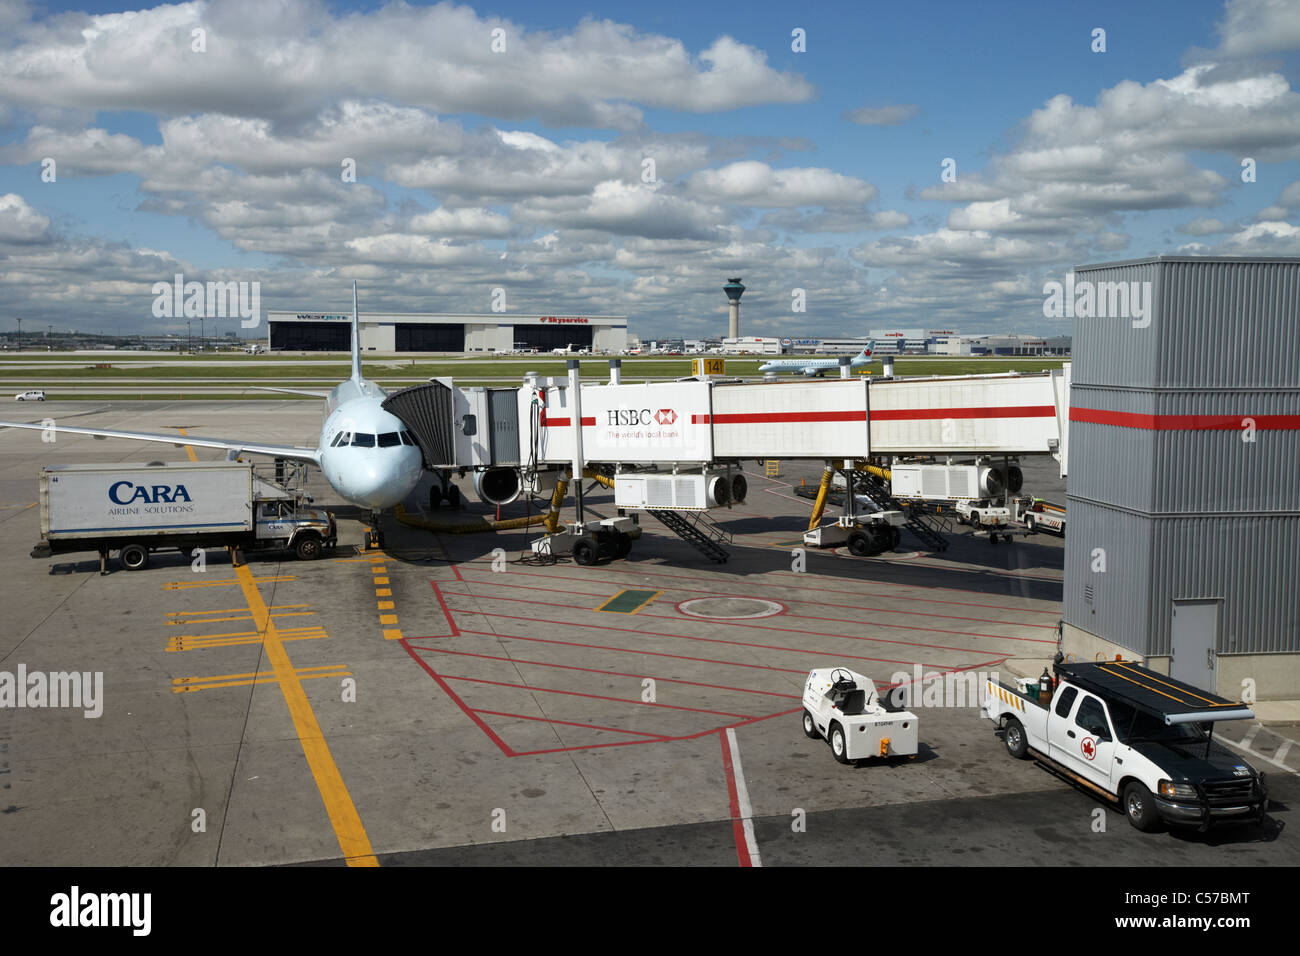 Air Canada Flugzeug und Flughafen Fahrzeuge Toronto Pearson internationaler Flughafen Ontario Canada Stockfoto